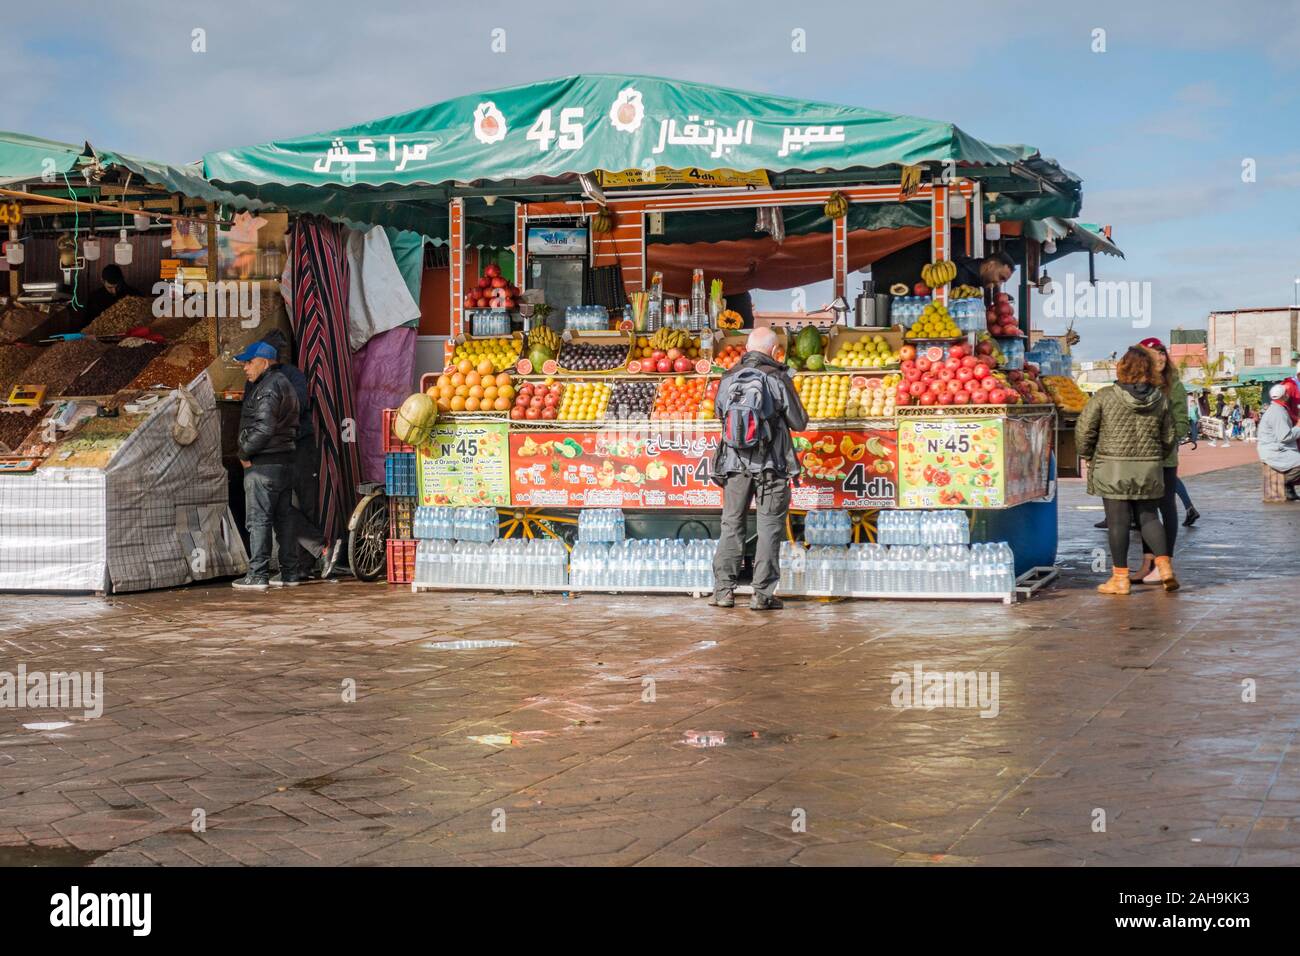 Saftstände auf Jemaa el-Fnaa in Marrakesch, Marokko, Afrika Stockfoto